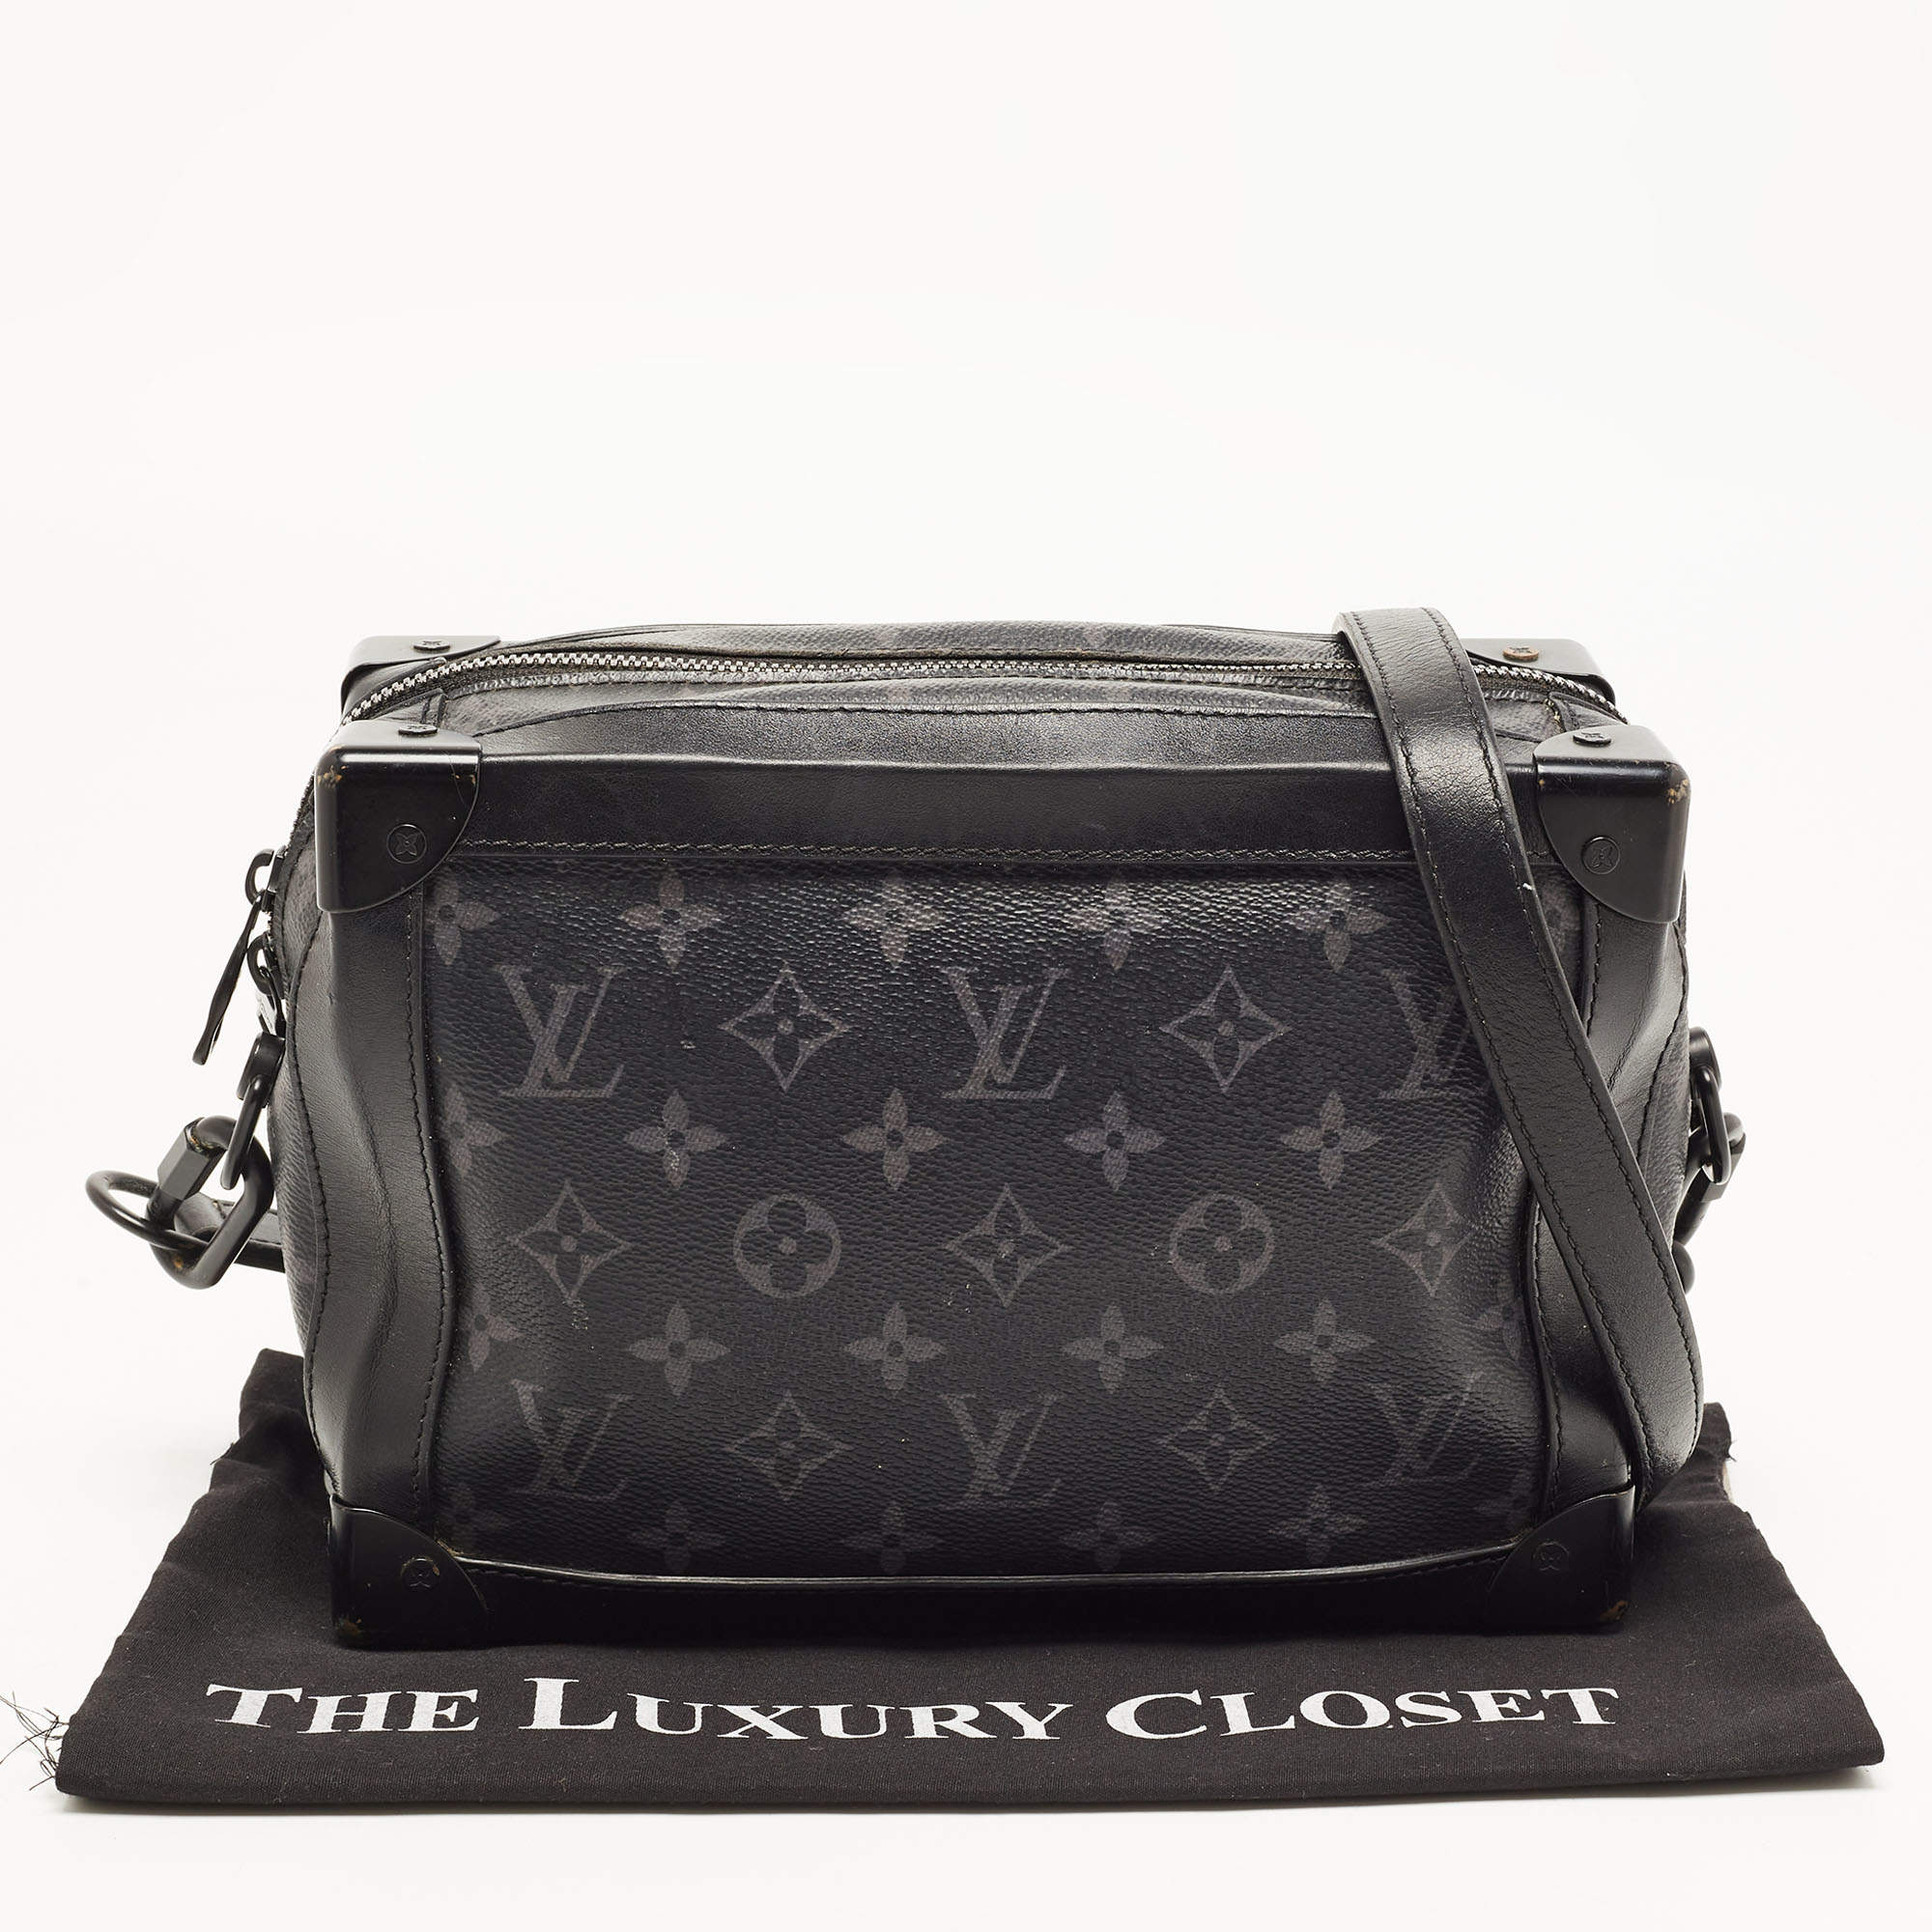 Louis Vuitton Trunk Shoulder bag 397810